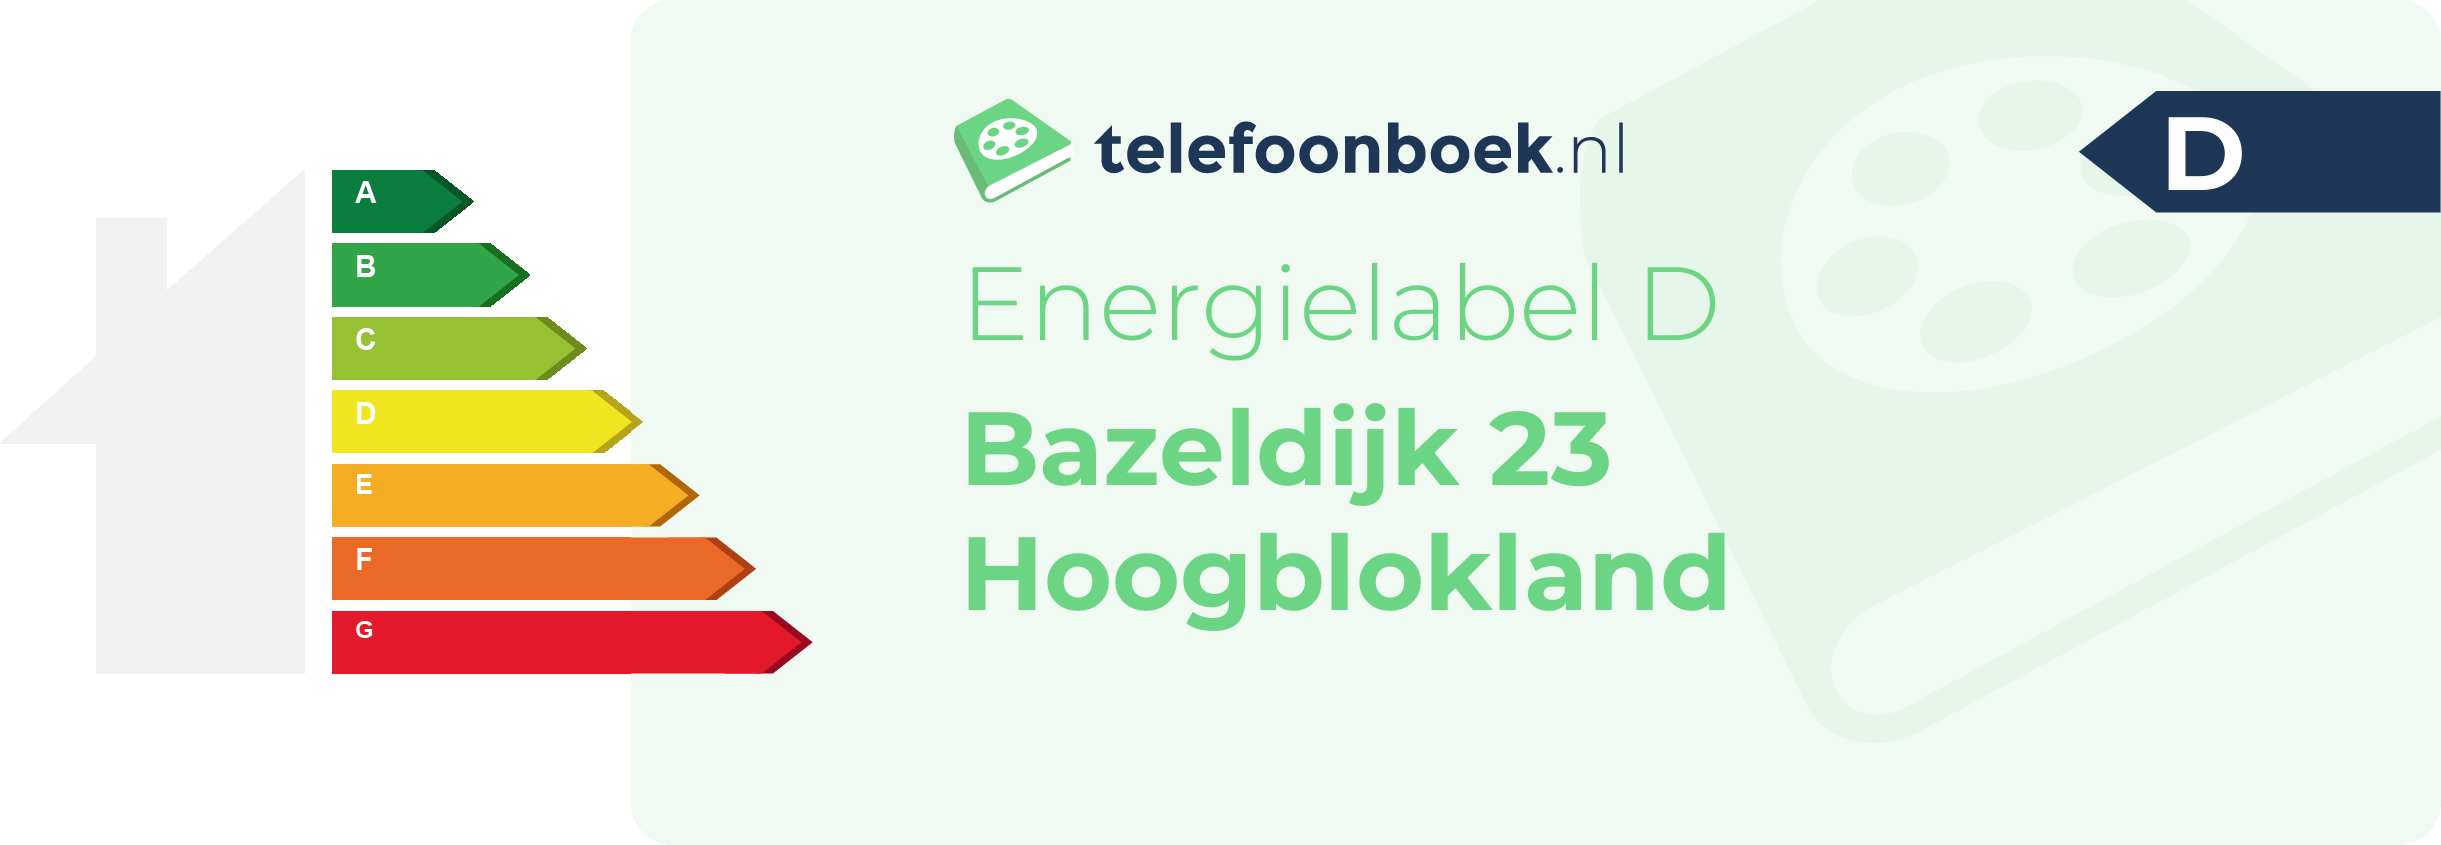 Energielabel Bazeldijk 23 Hoogblokland